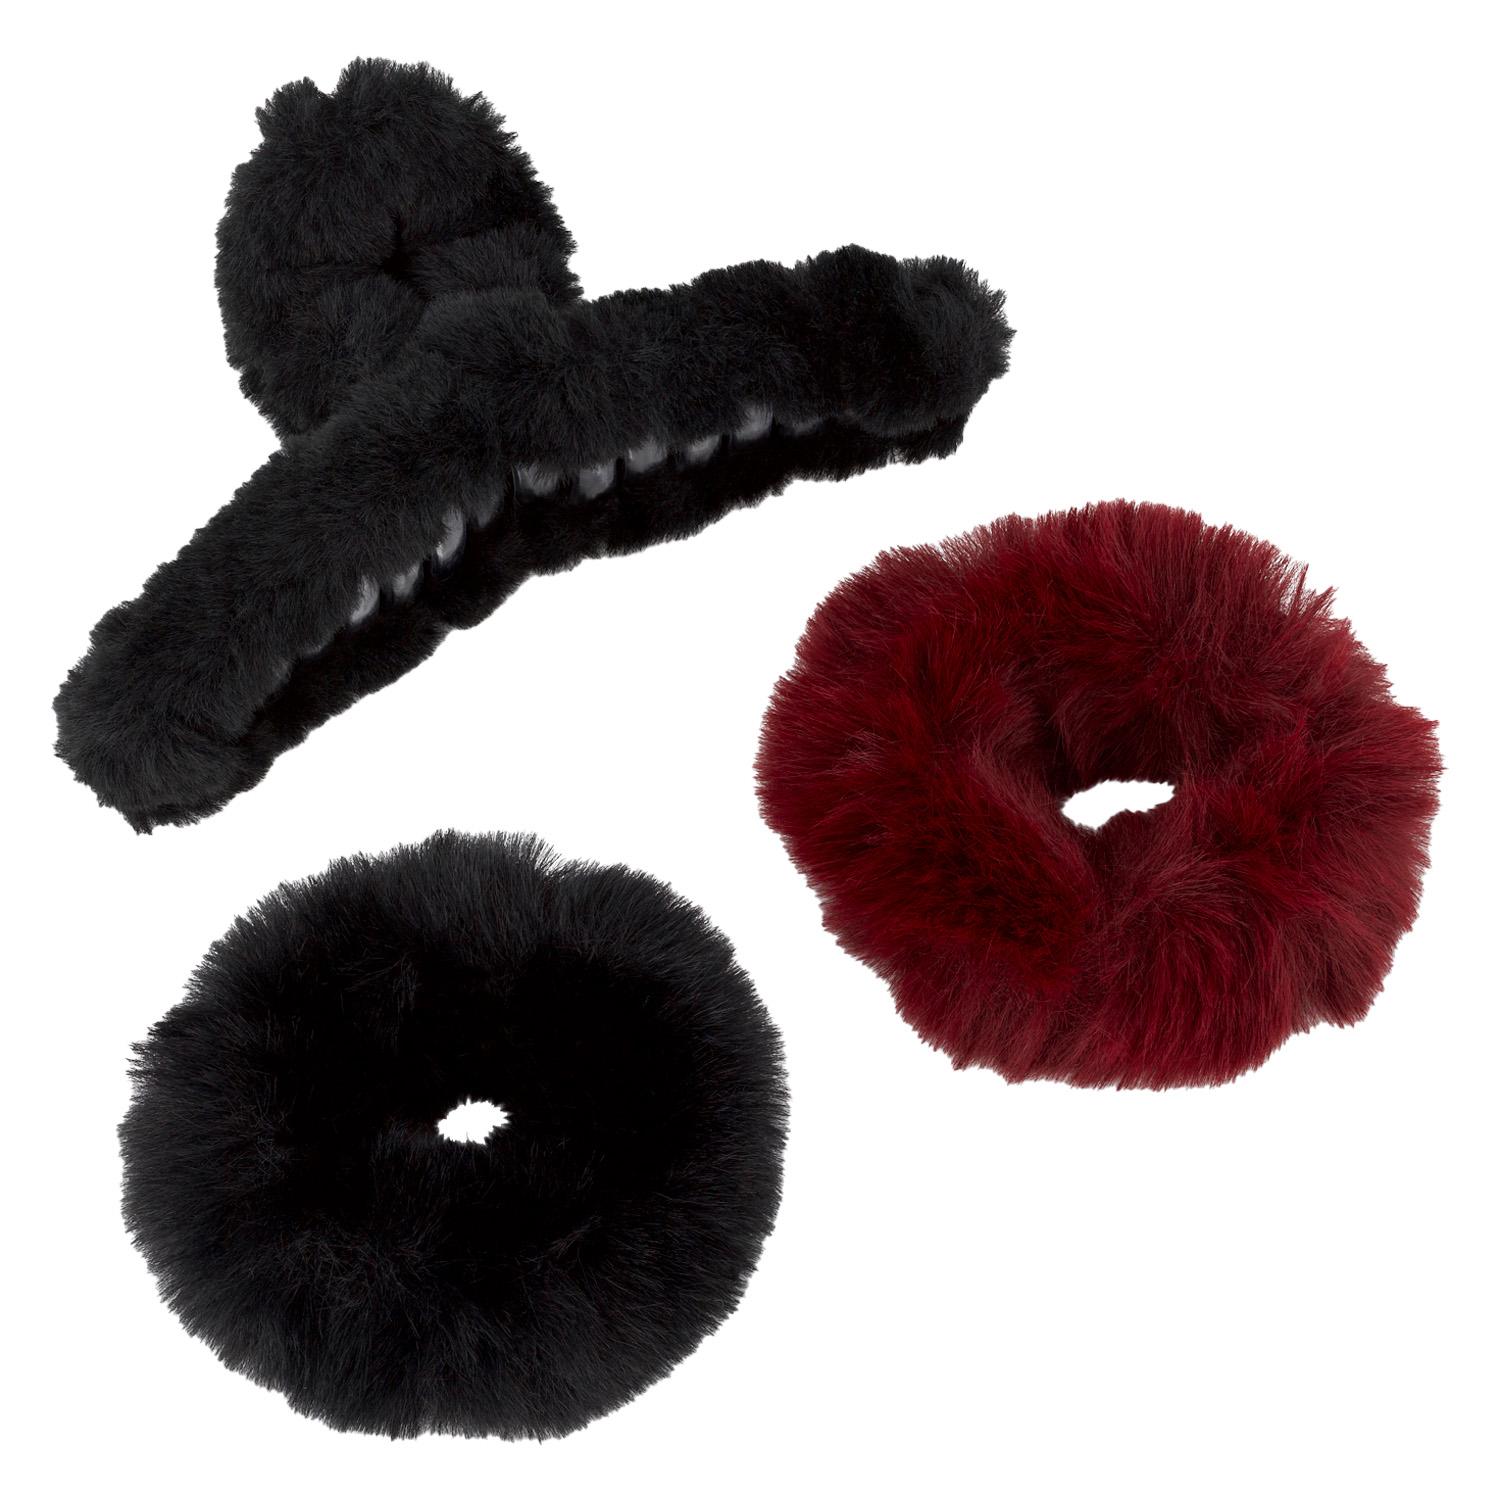 TRISA Hair - Fake Fur Kit, black & burgundy